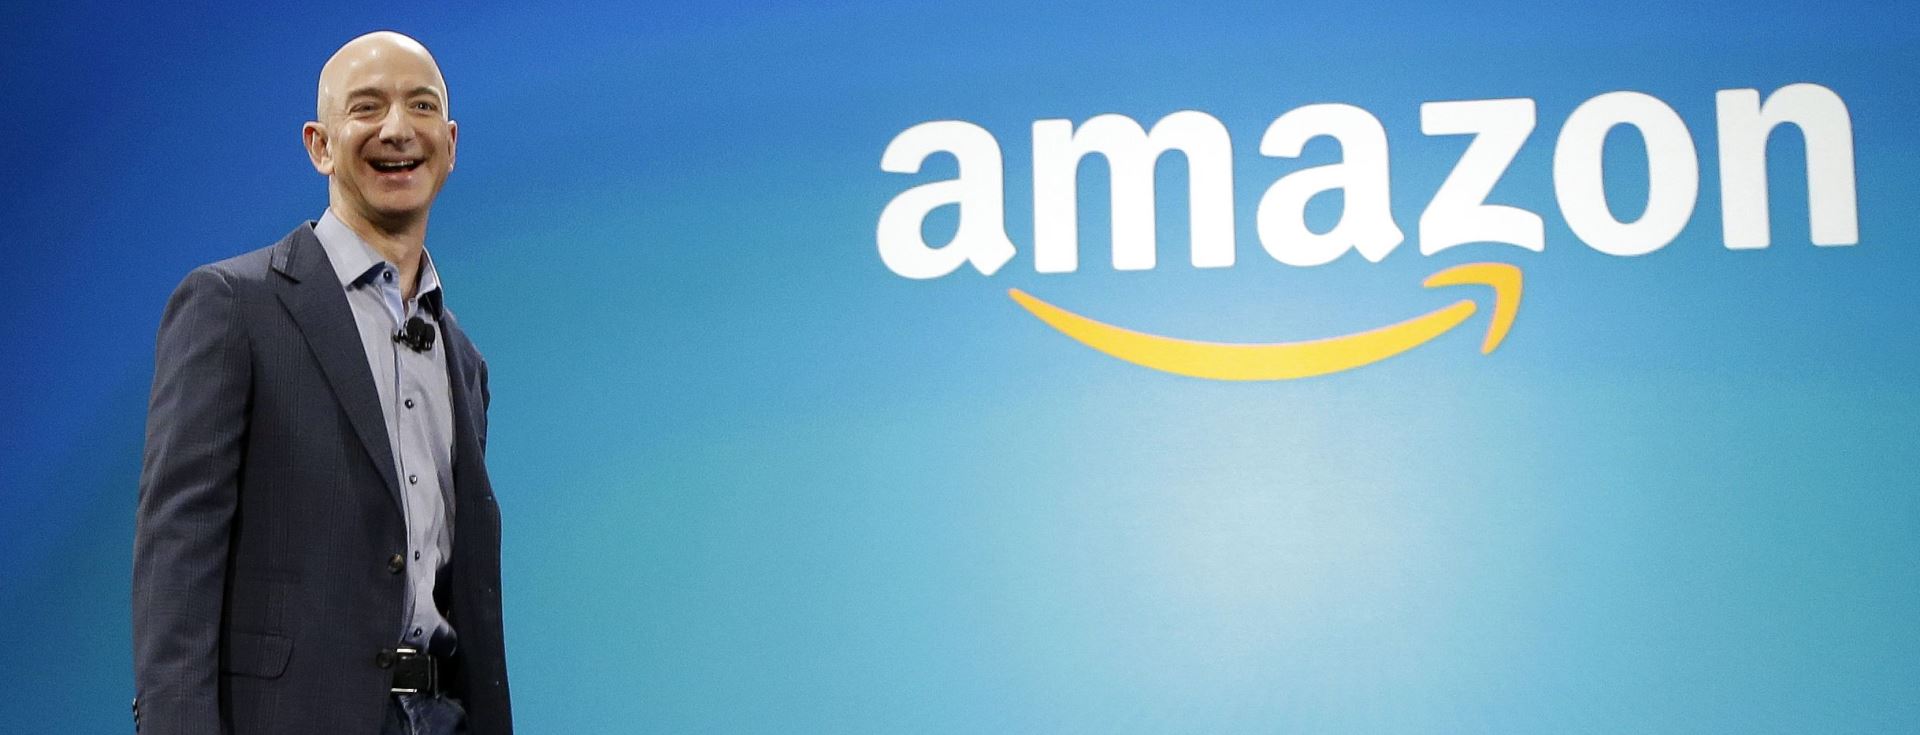 Amazon Türkiye Mart Ayı Sonunda Açılıyor